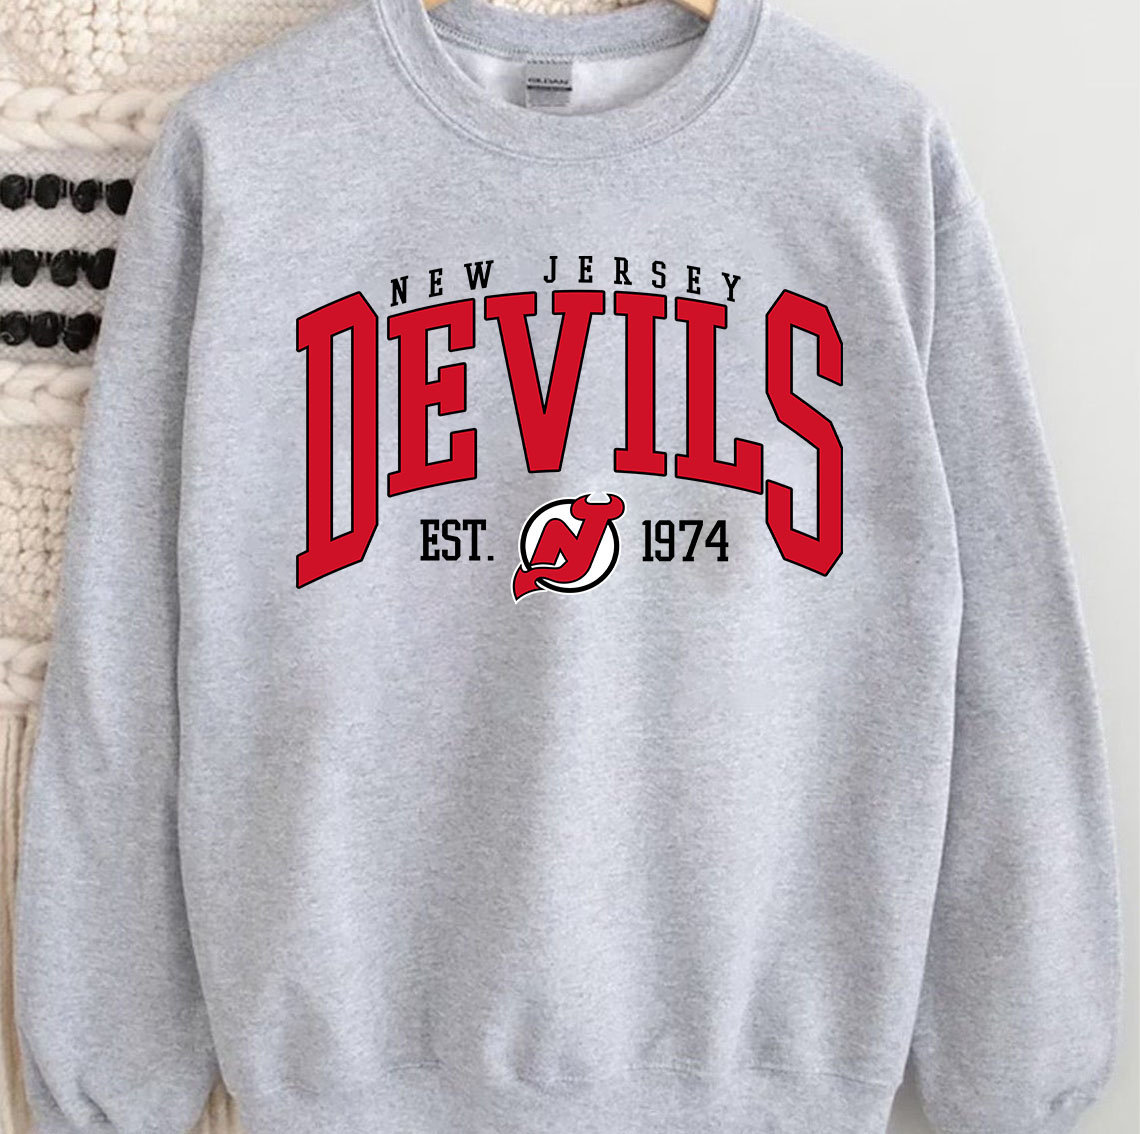 New Jersey Devils Logo Crewneck Sweatshirt - West Breeze Tee